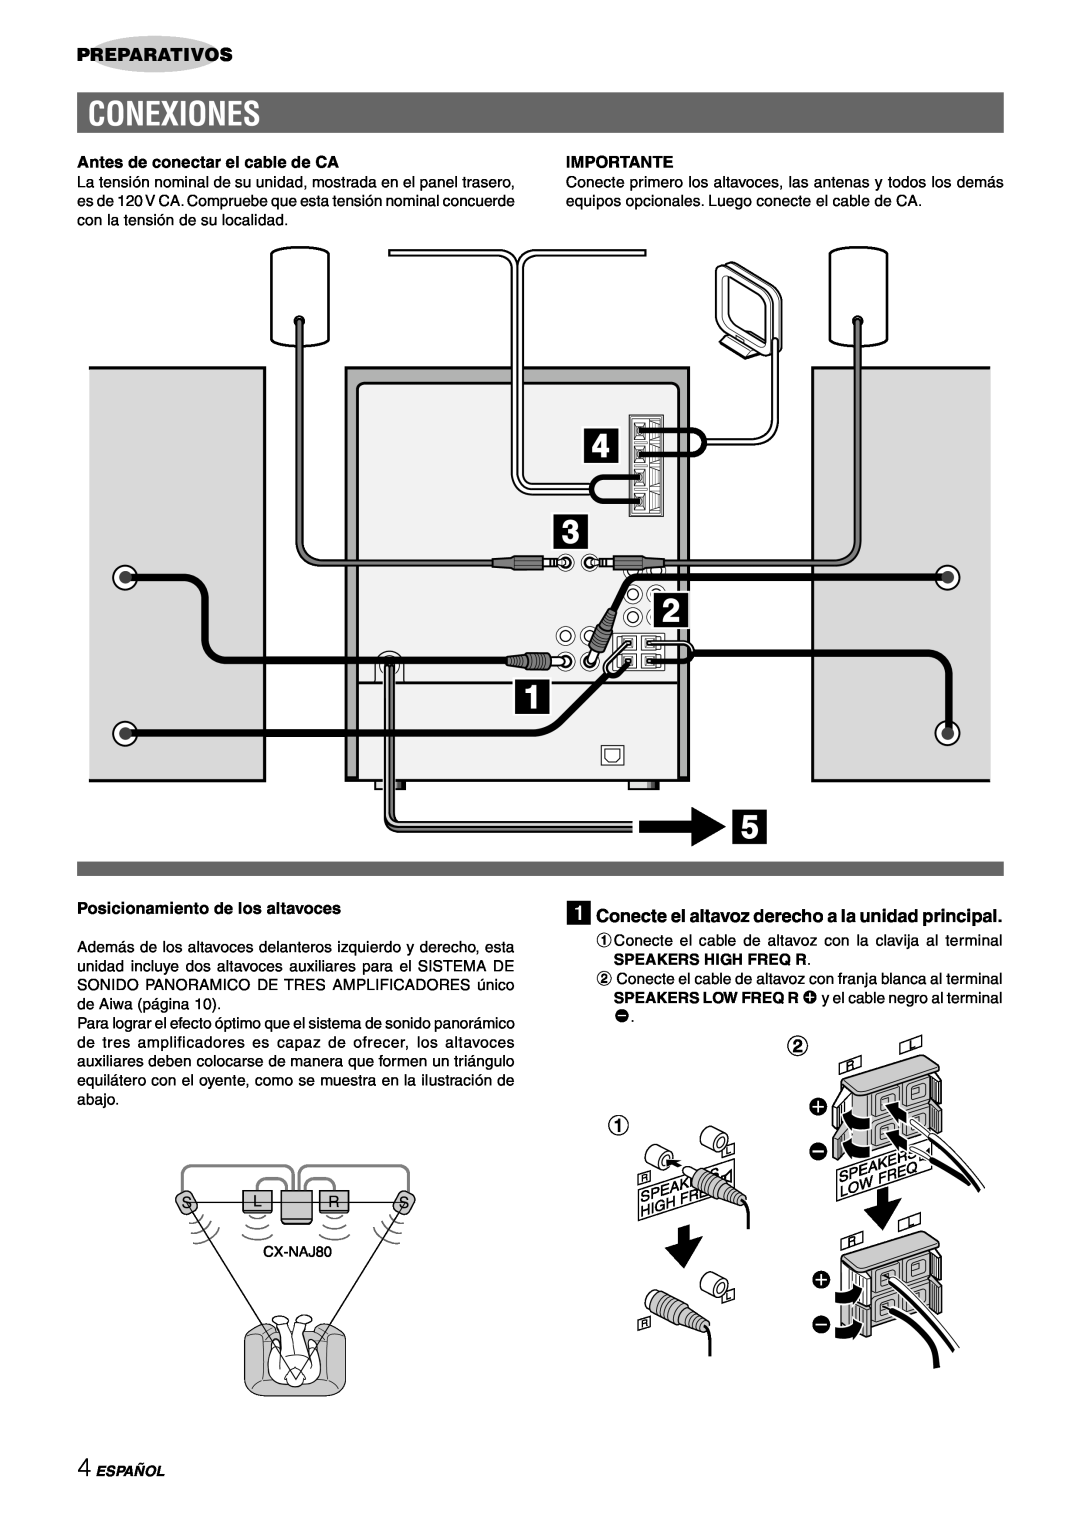 Sony NSX-AJ80 manual Conexiones, Preparativos, 1Conecte el altavoz derecho a la unidad principal, Importante, Español 